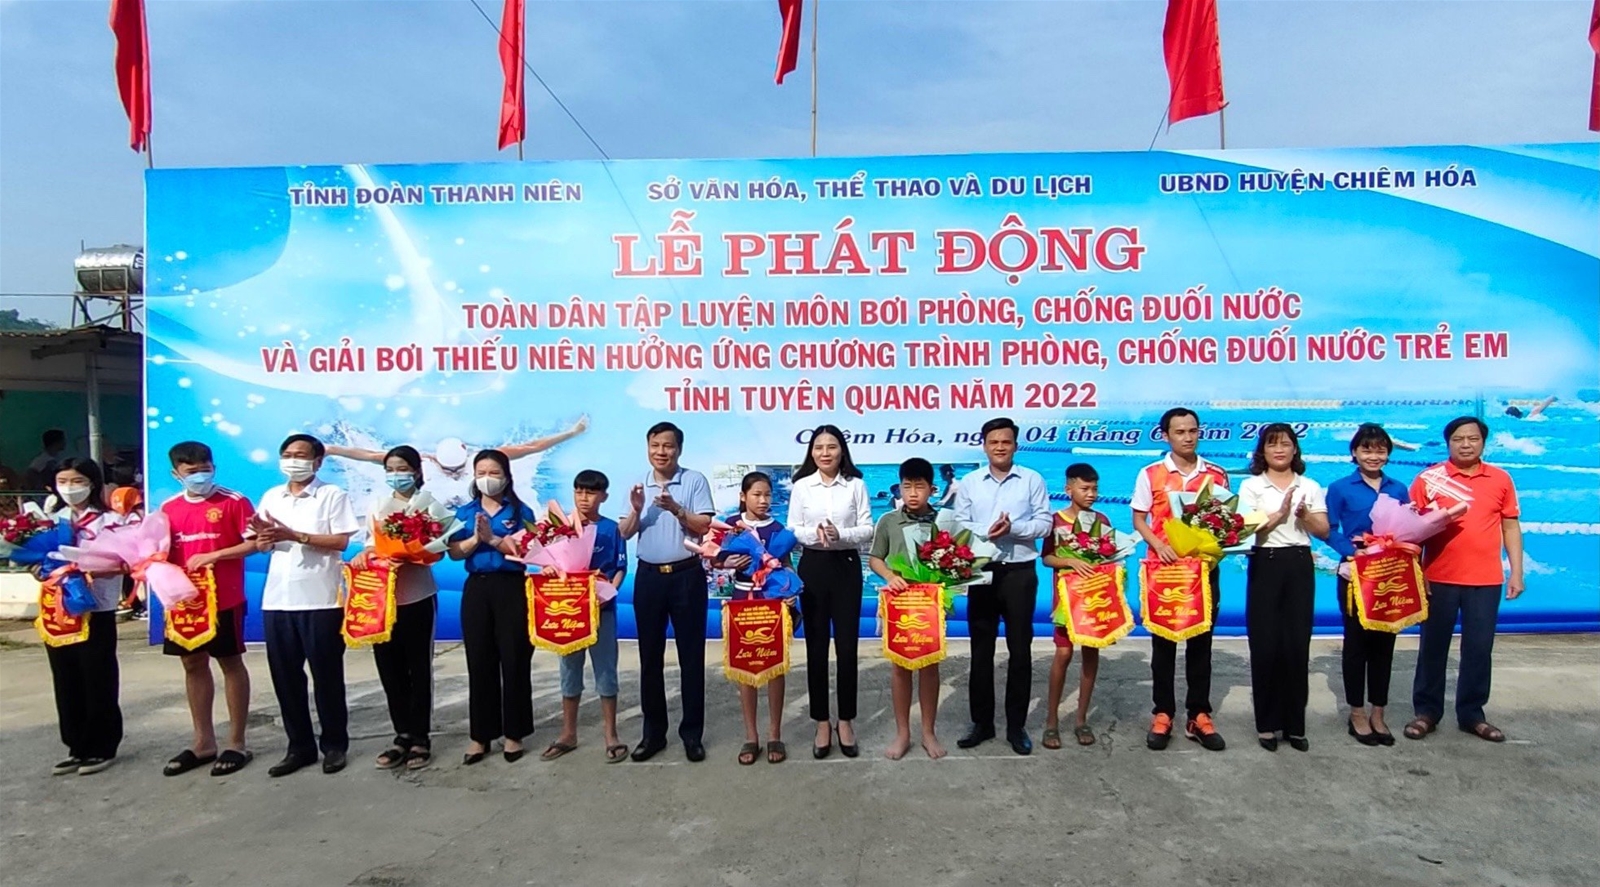 Lễ phát động toàn dân tập luyện môn bơi phòng, chống đuối nước và giải bơi Thiếu niên hưởng ứng Chương trình phòng, chống đuối nước trẻ em tỉnh Tuyên Quang năm 2022